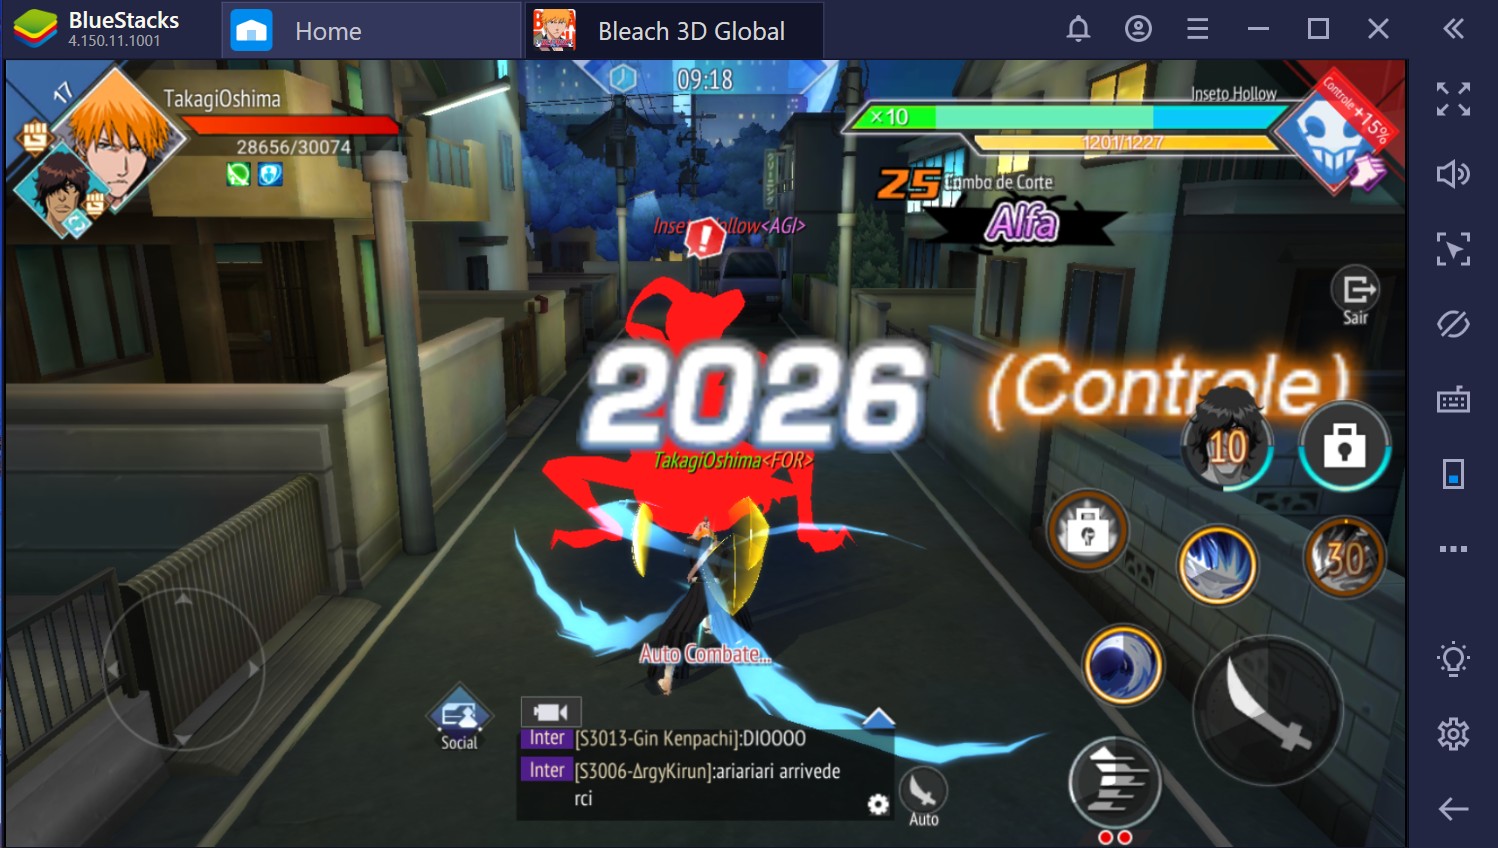 Bleach Mobile 3D: dicas e truques para iniciantes